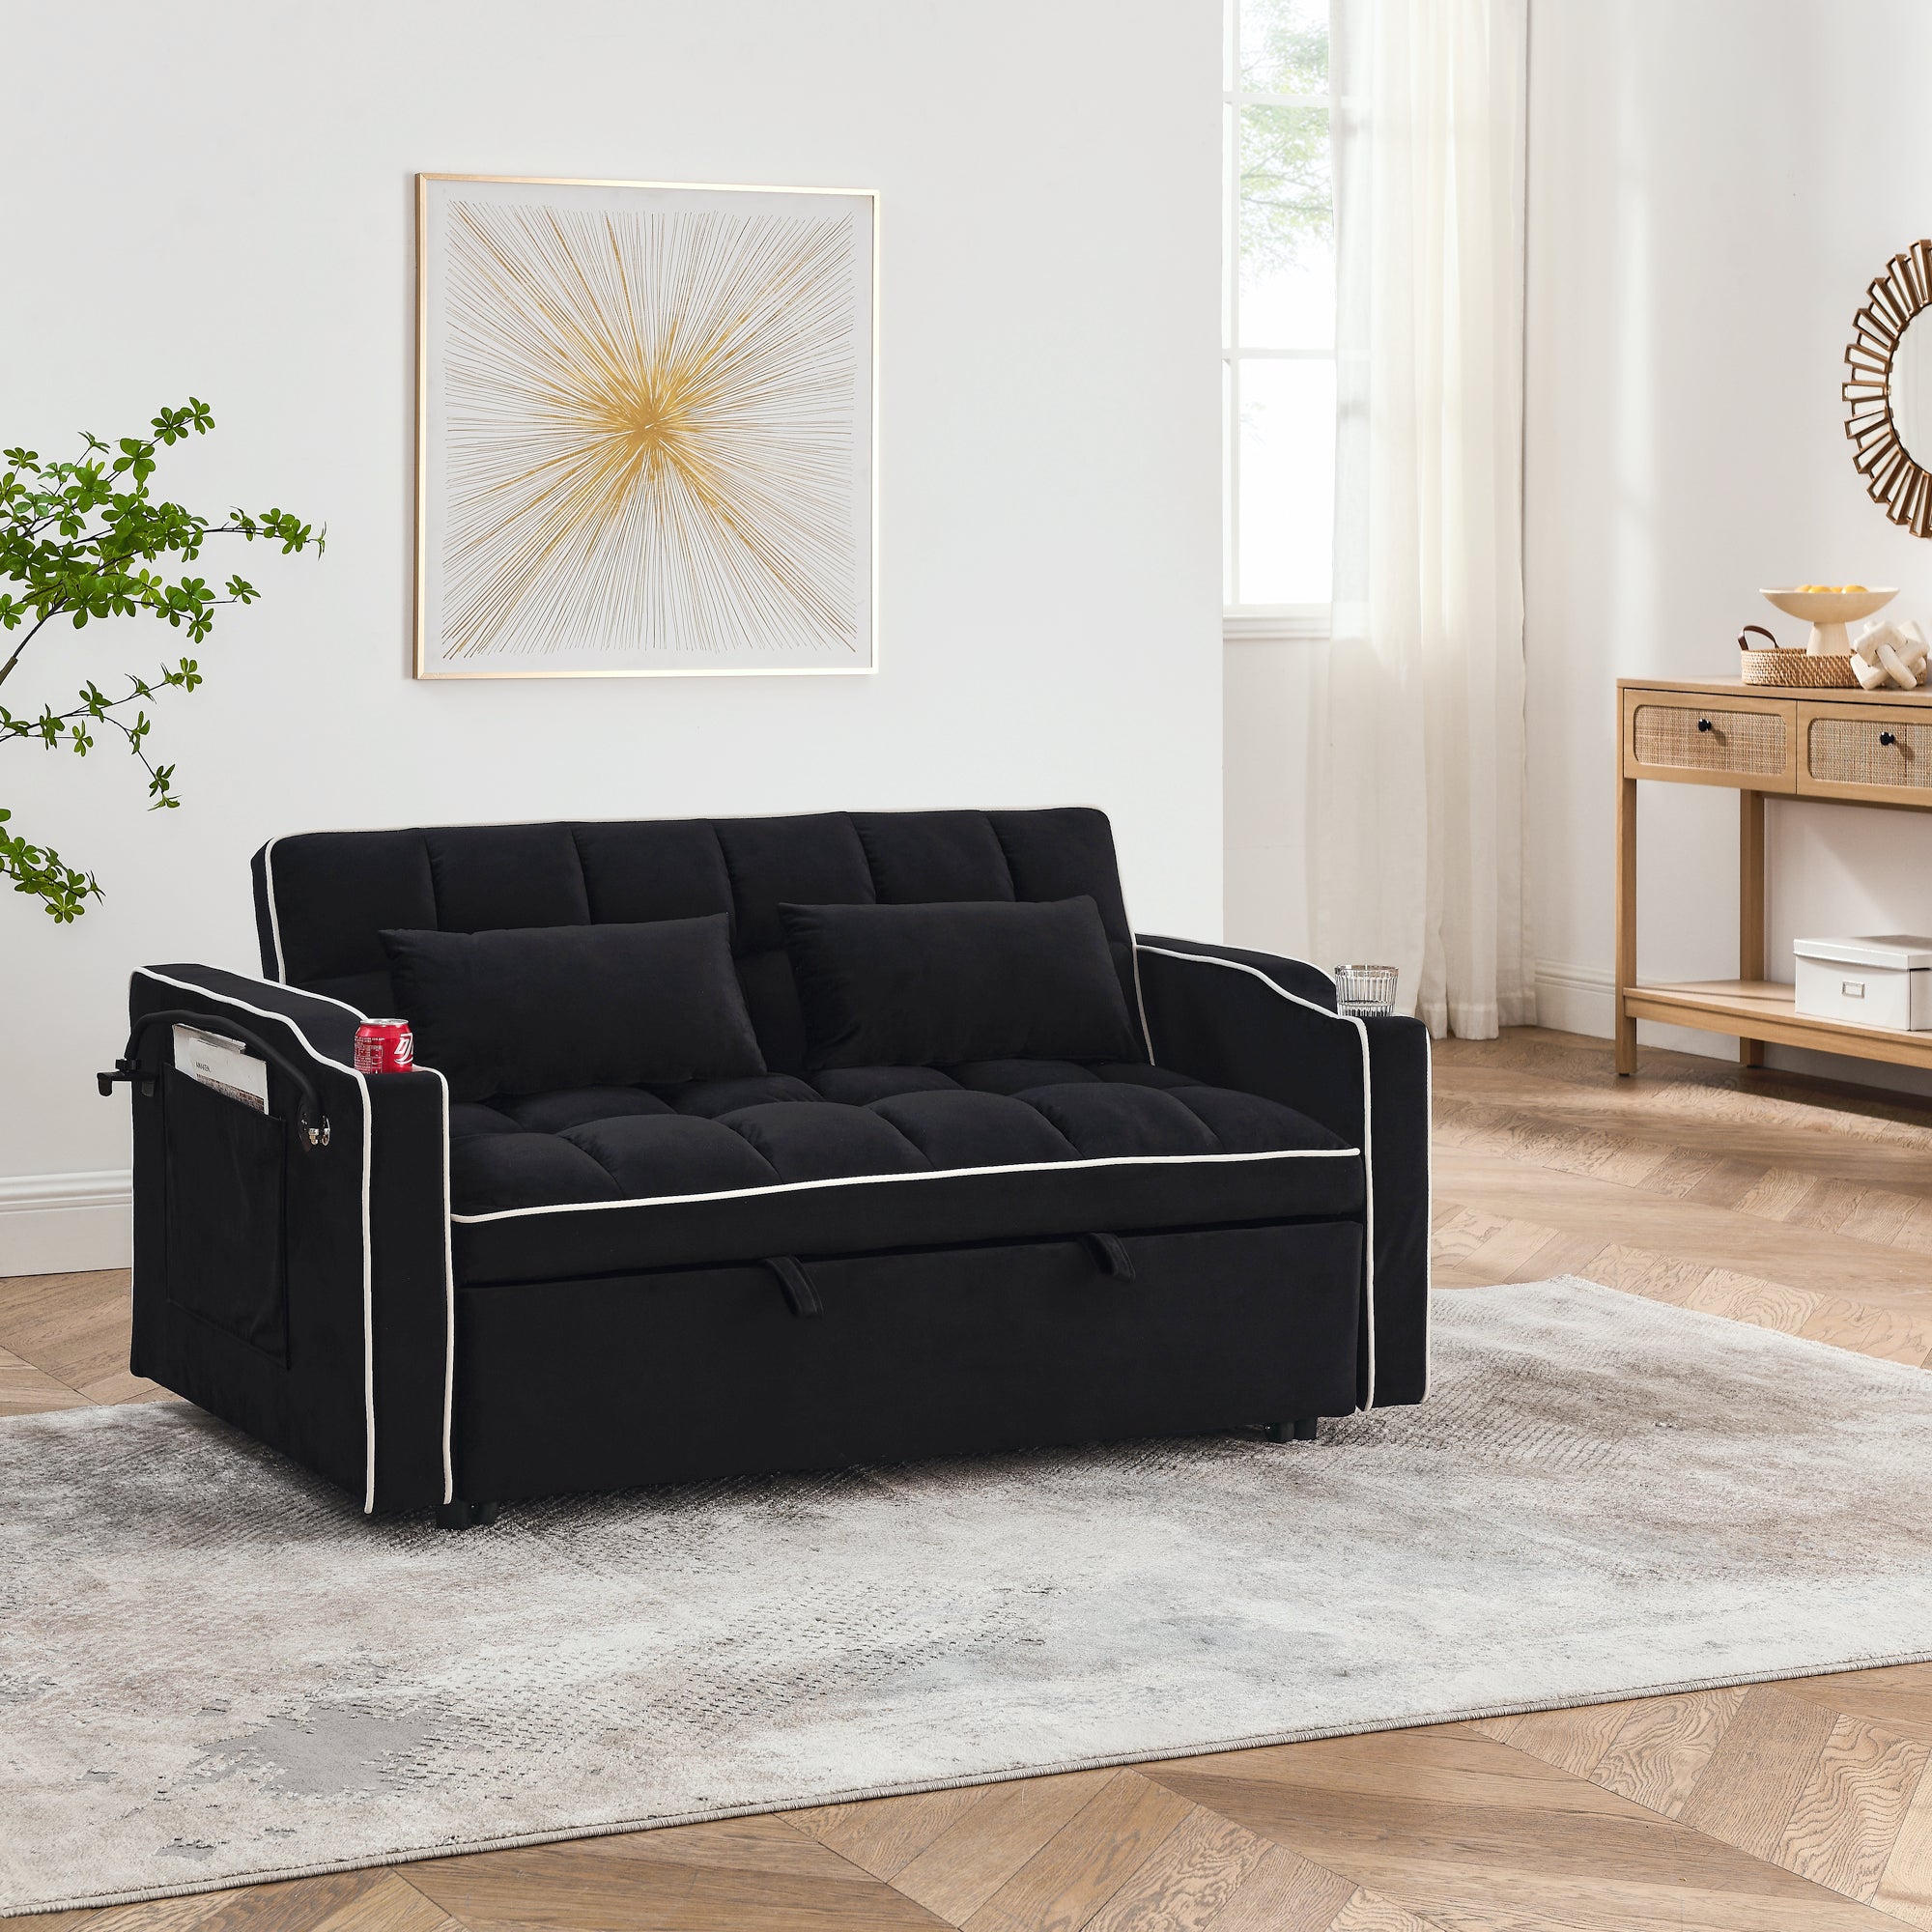 55.51 inch versatile foldable sofa bed in 3 lengths black-velvet-wood-primary living